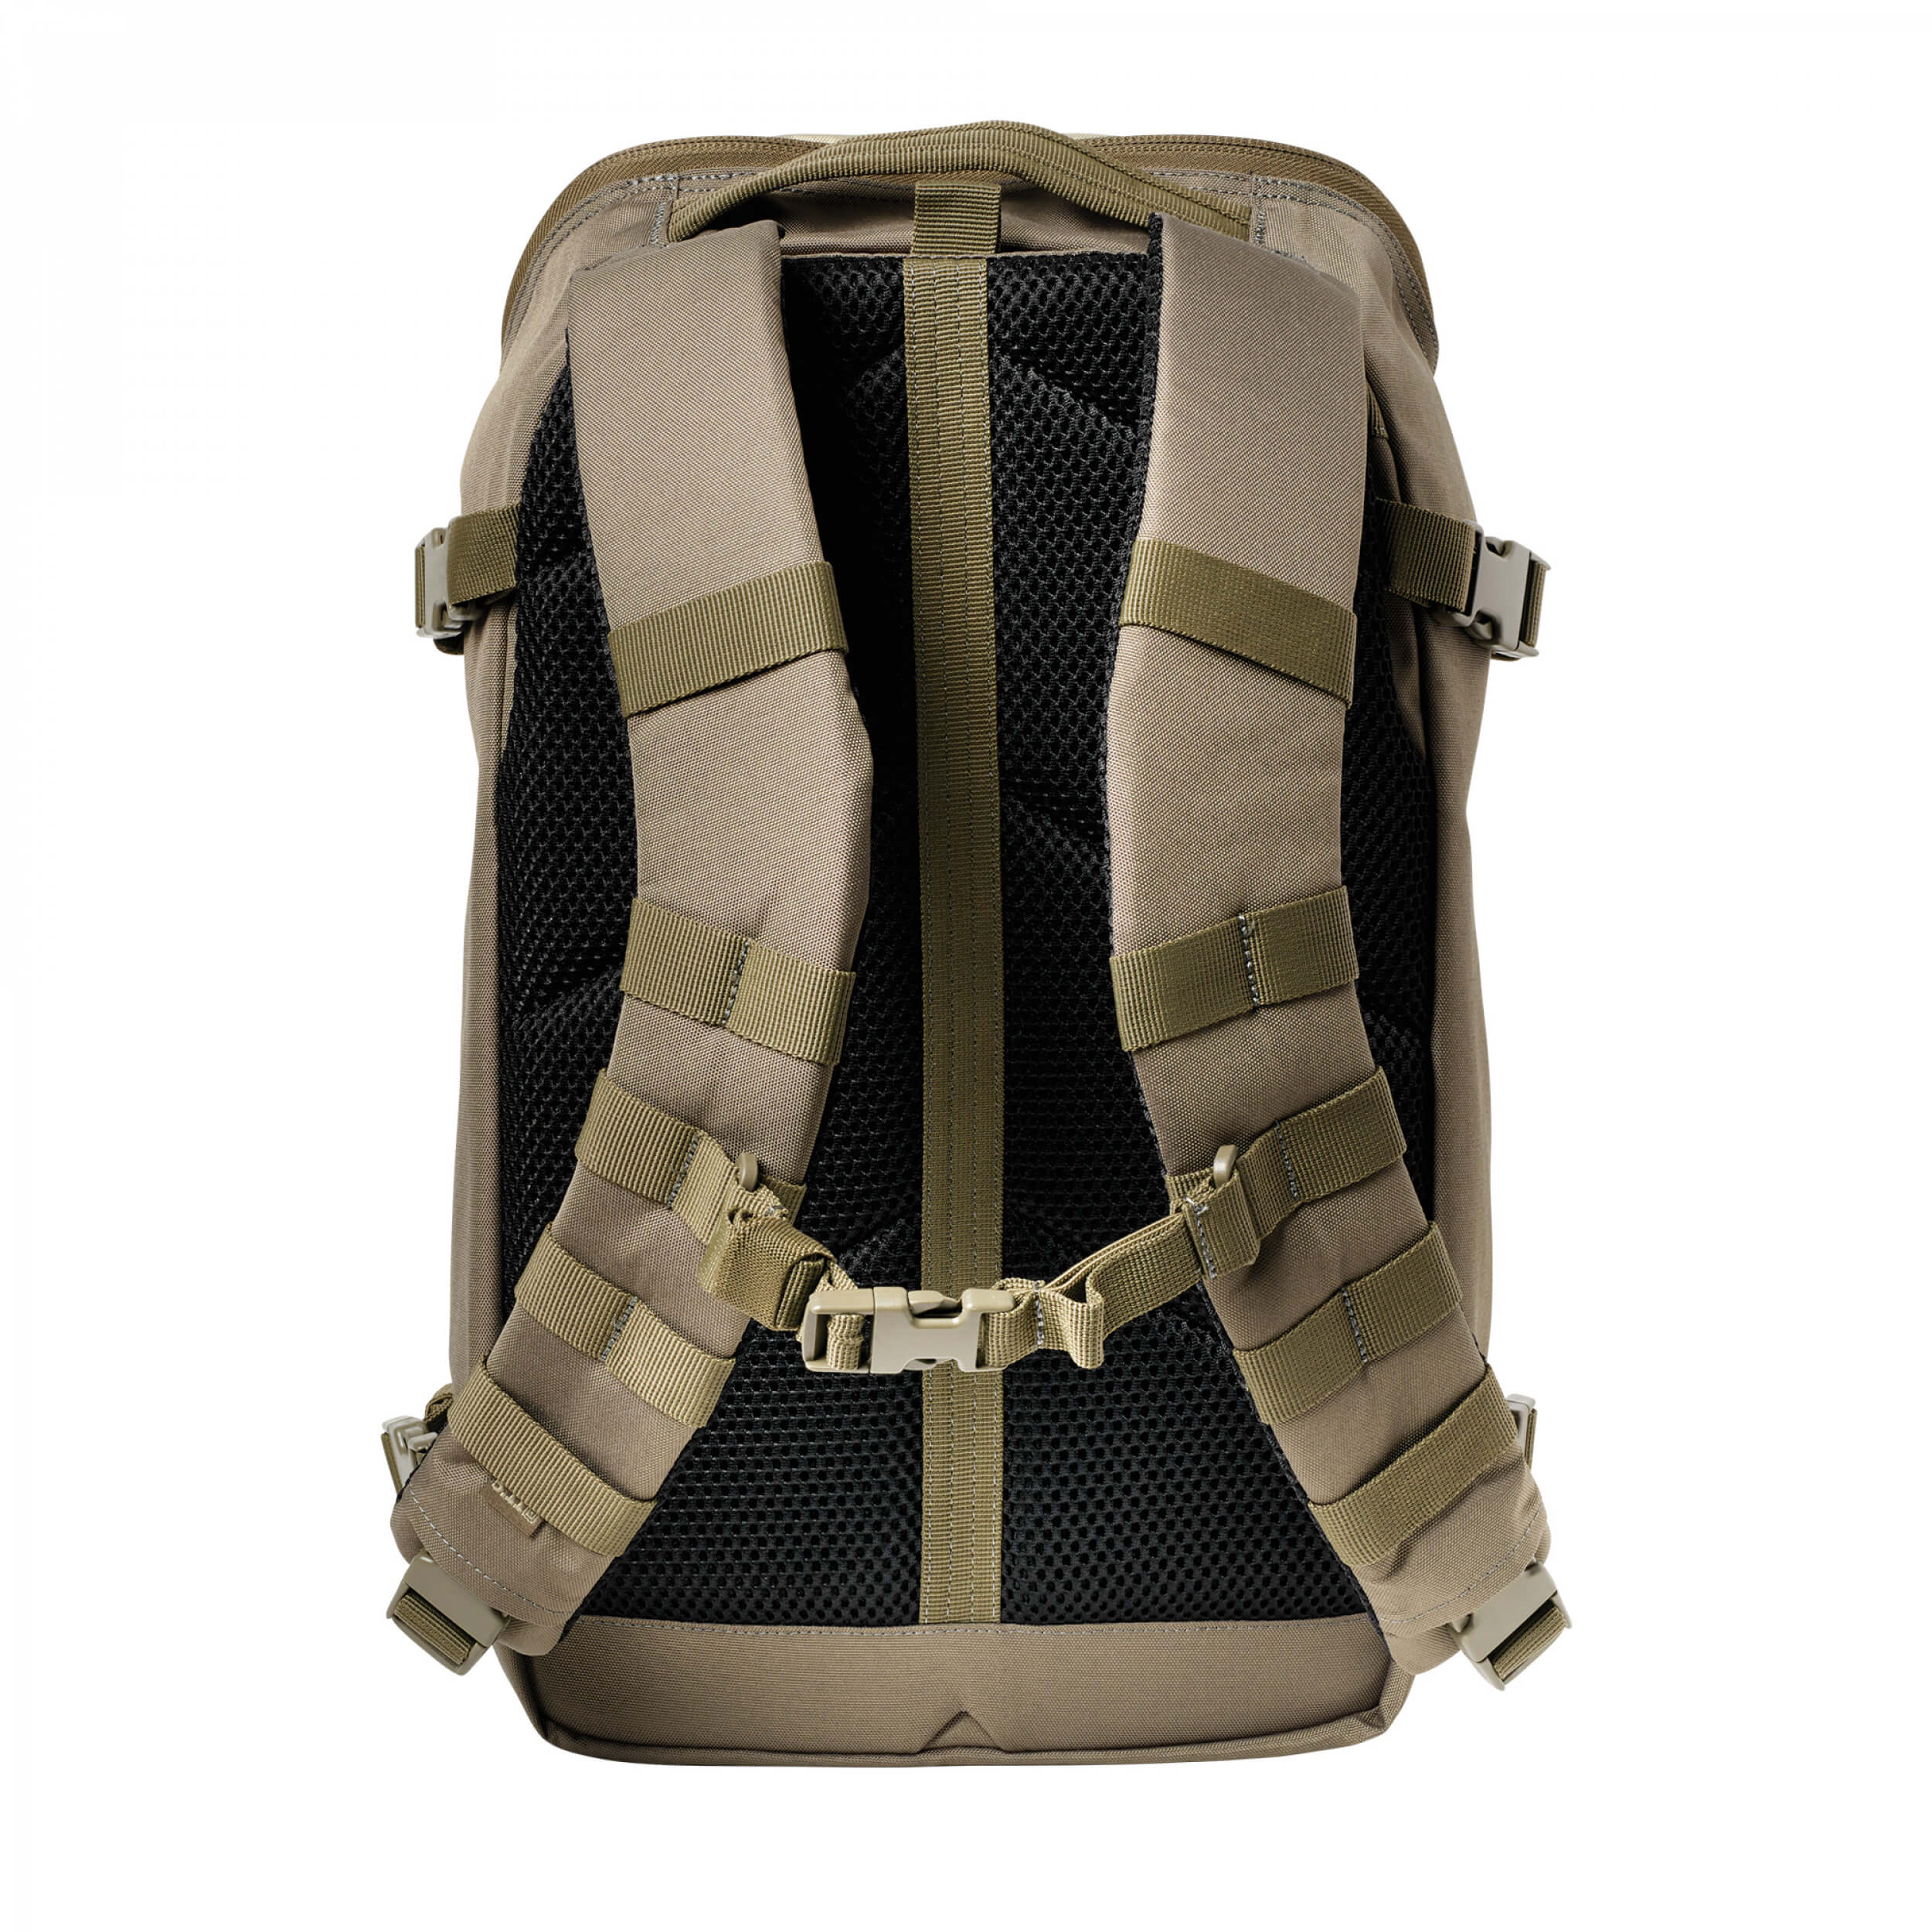 5.11 Tactical Rapid Quad Zip Pack 27L Backpack KHAKI (055)